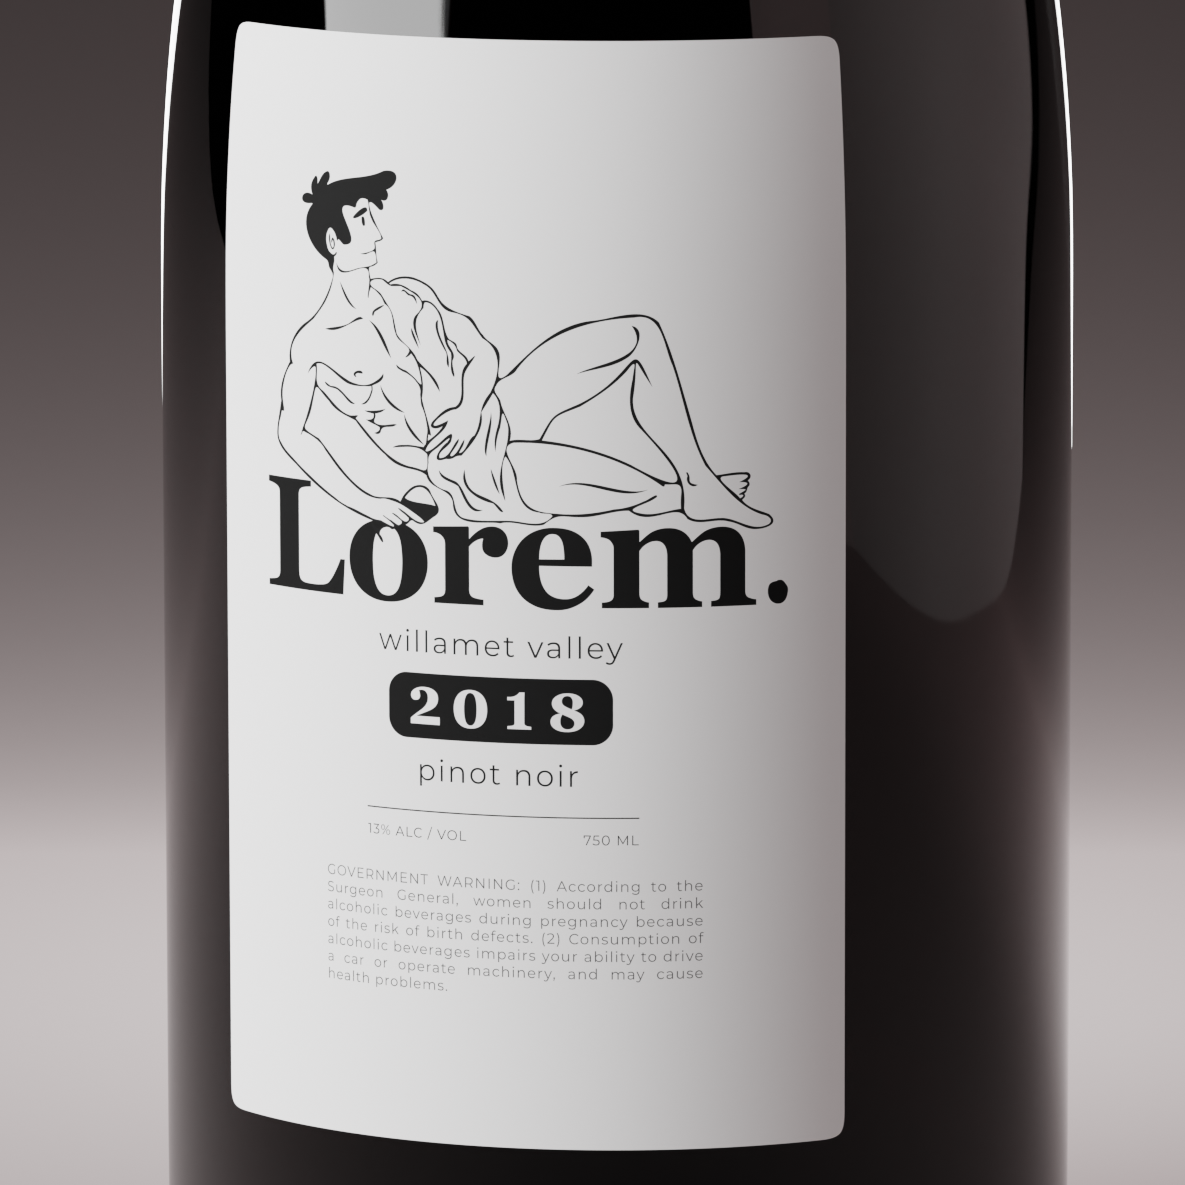 lorem wine